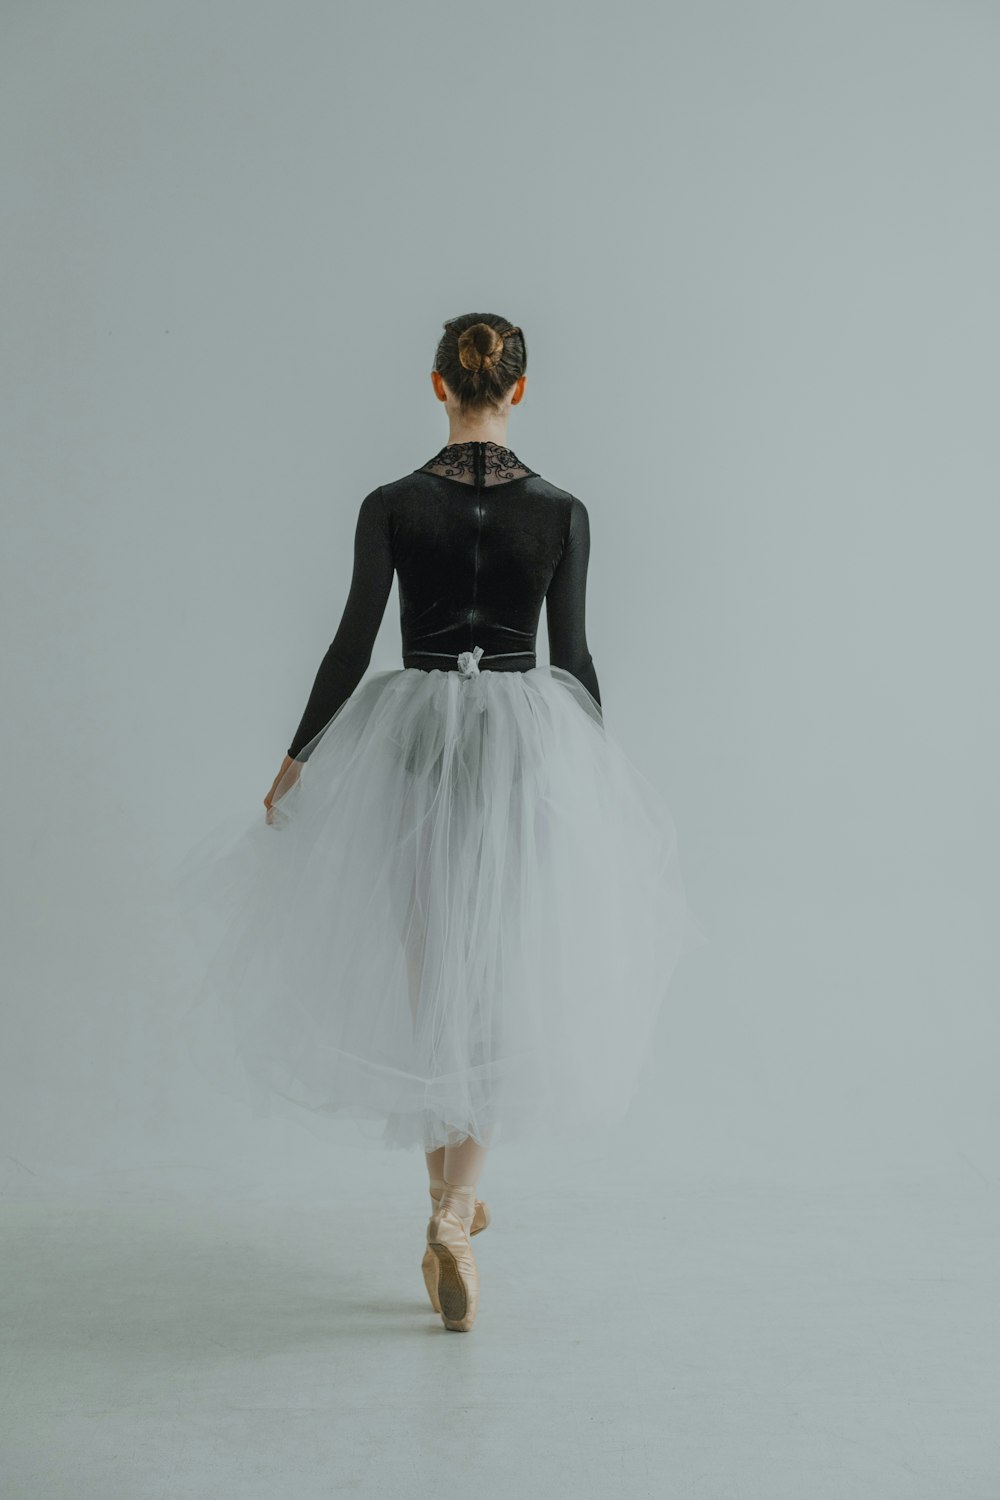 Foto Una mujer con un tutú blanco y un top negro – Bailando Imagen en  Unsplash